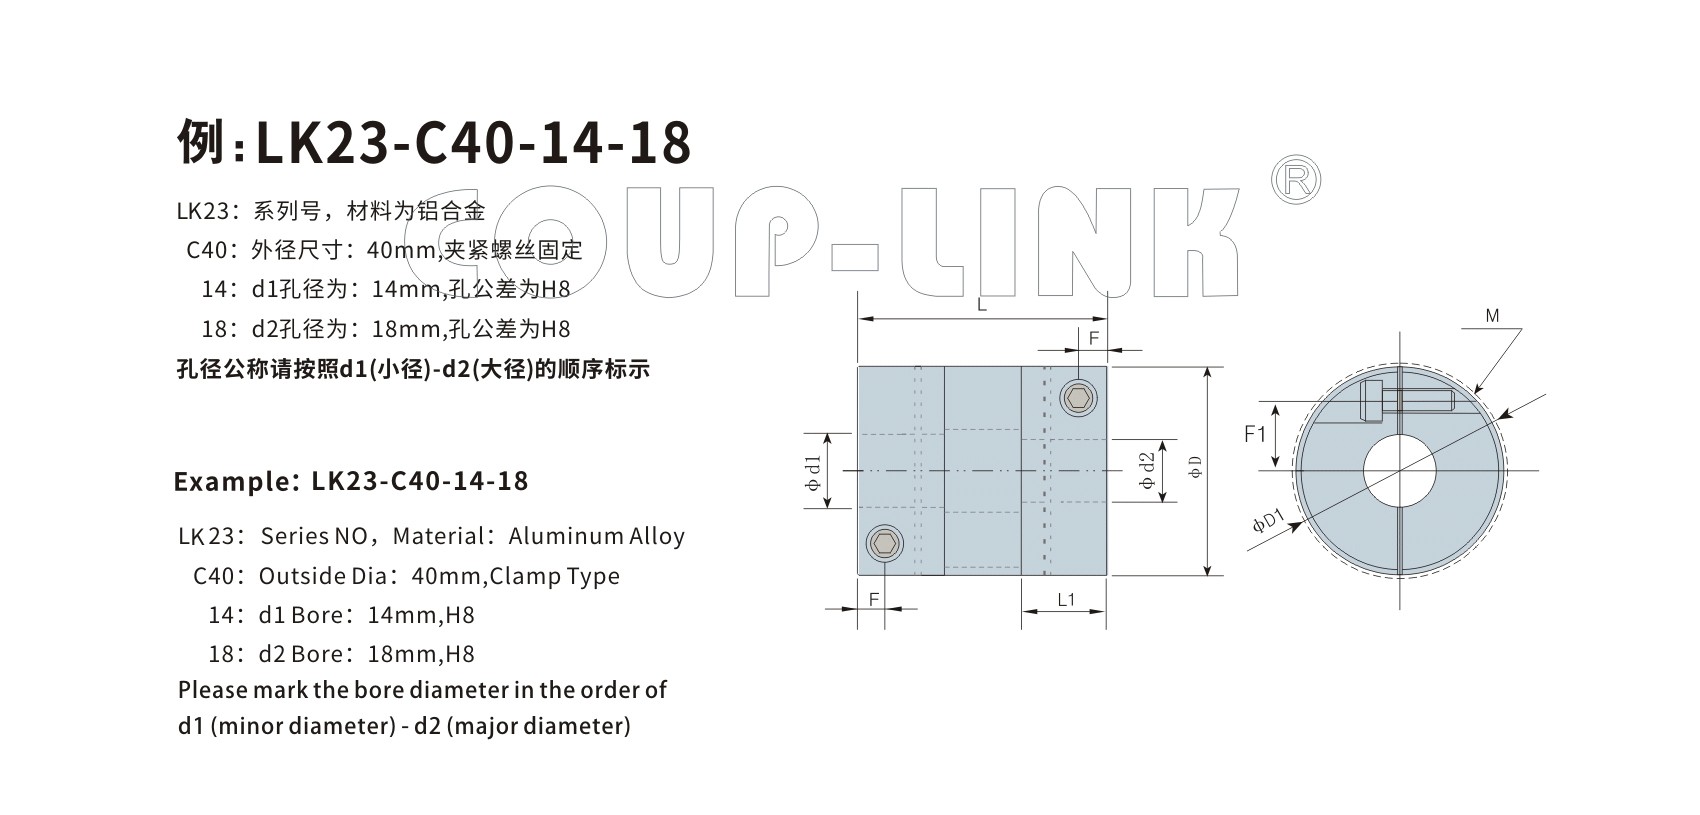 LK23系列 高响应联轴器_联轴器种类-广州菱科自动化设备有限公司